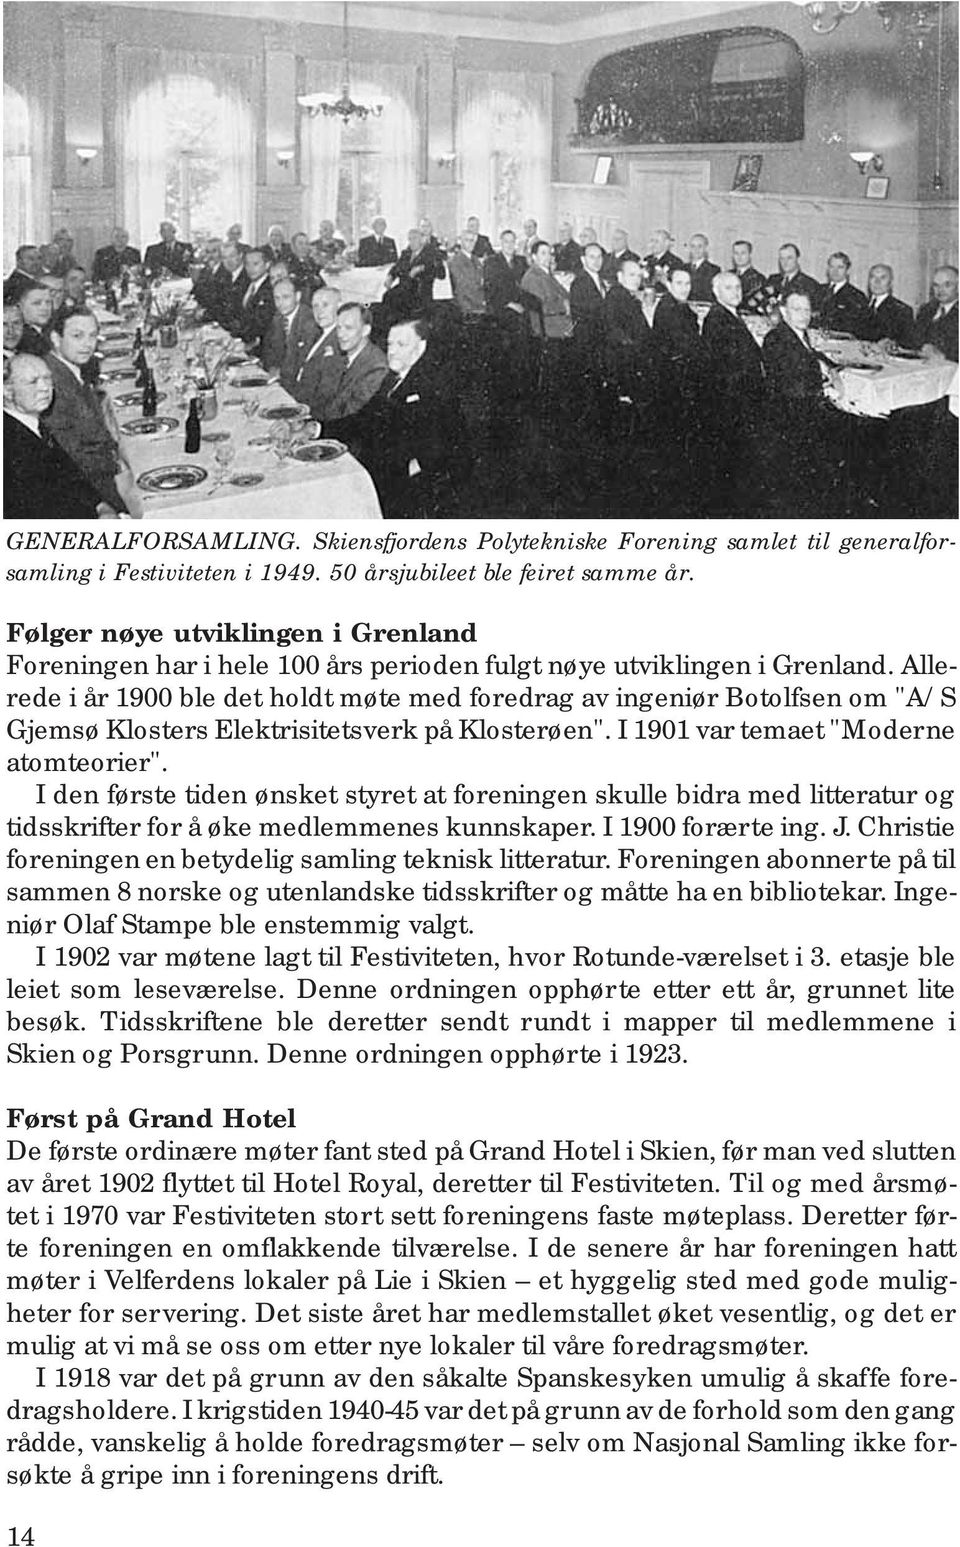 Allerede i år 1900 ble det holdt møte med foredrag av ingeniør Botolfsen om "A/S Gjemsø Klosters Elektrisitetsverk på Klosterøen". I 1901 var temaet "Moderne atomteorier".